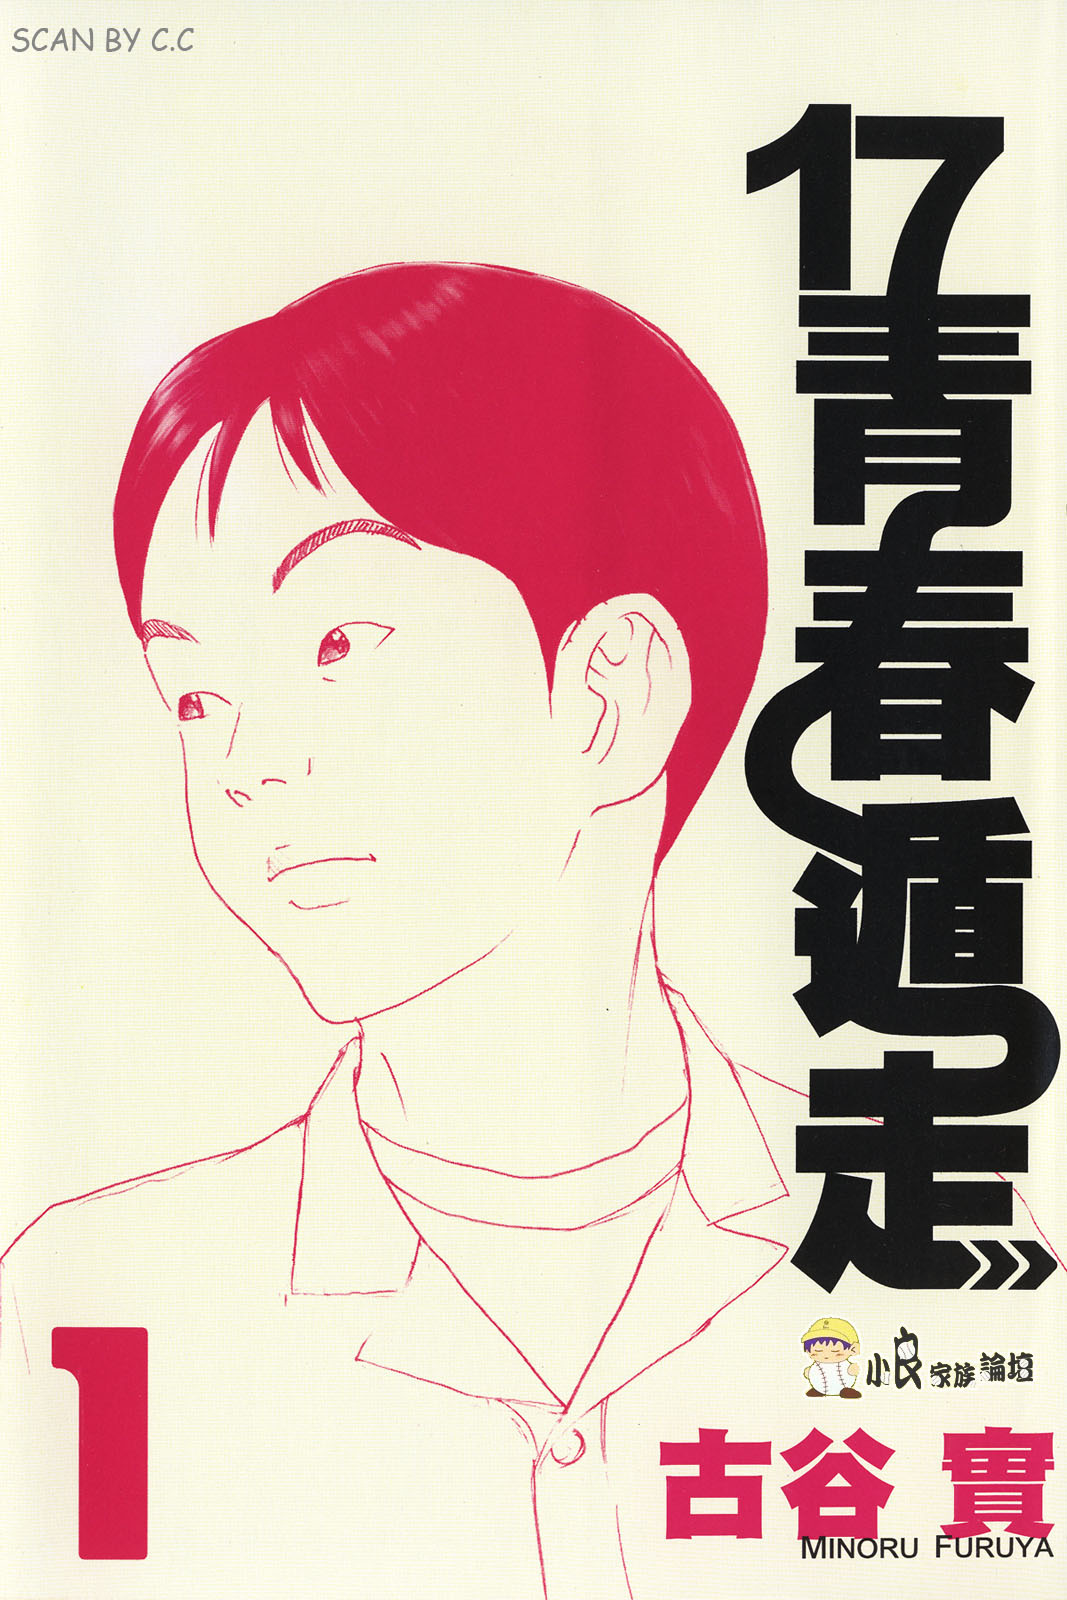 【漫画】【完结】《17青春遁走》PDF JPG 百度网盘/阿里云下载